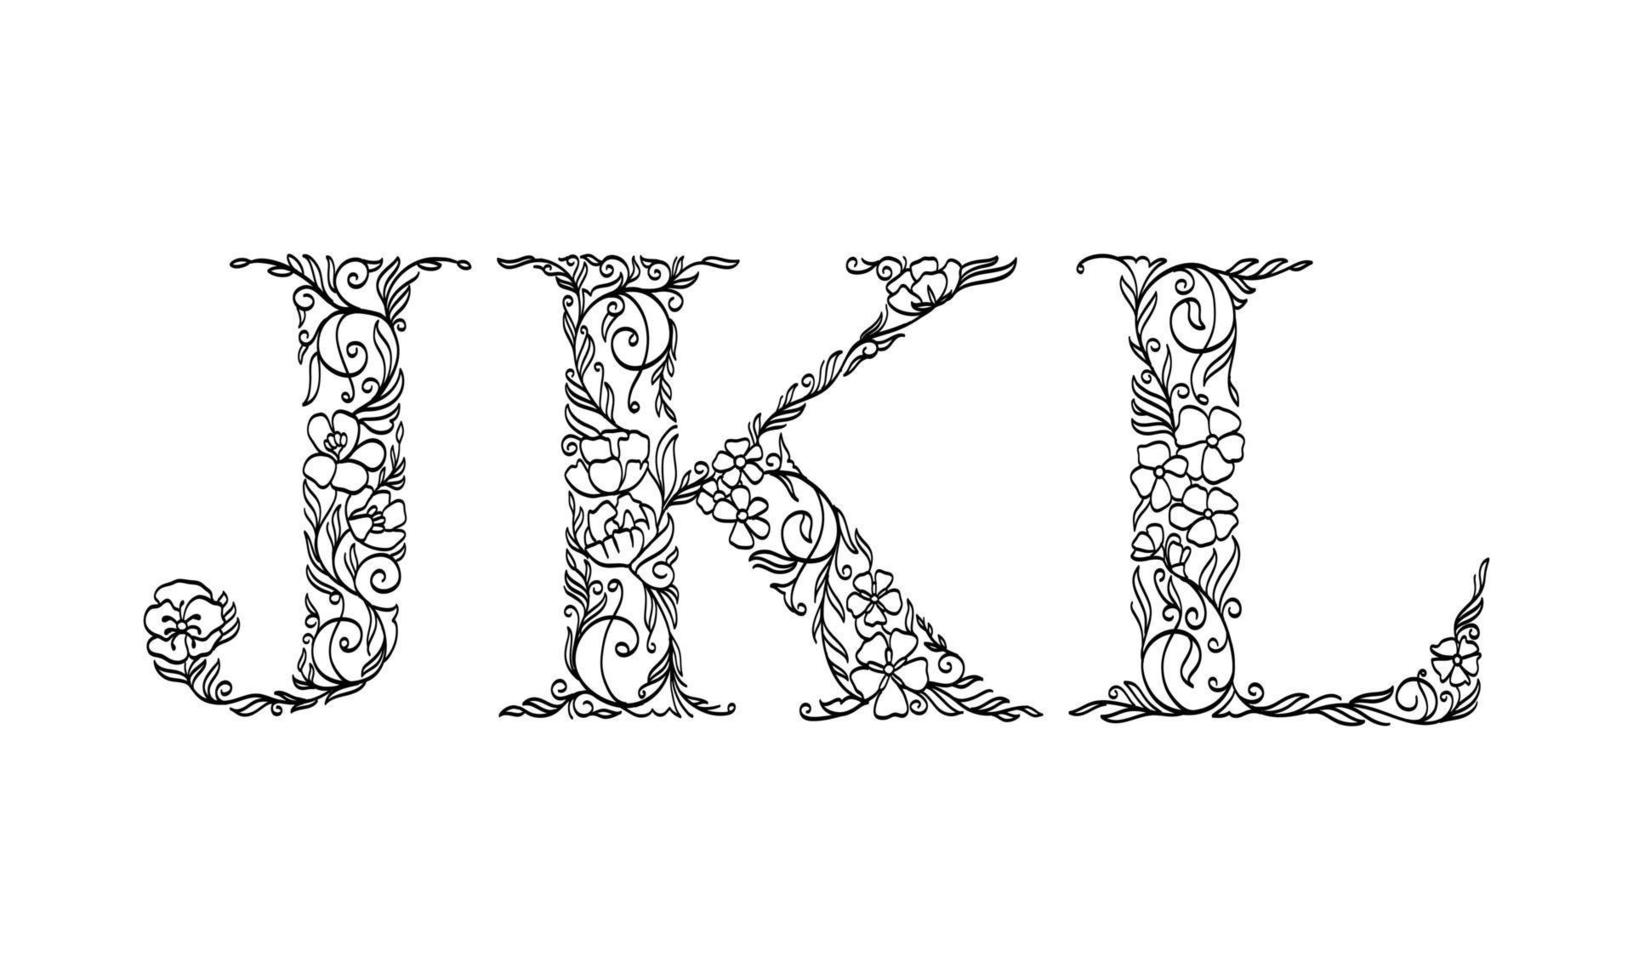 blommig illustration alfabetet j, k, l, vektorgrafiskt teckensnitt gjorda av blom- och bladväxter kreativ handritad linjekonst för abstrakt och naturlig naturstil i unik monokrom designdekoration vektor